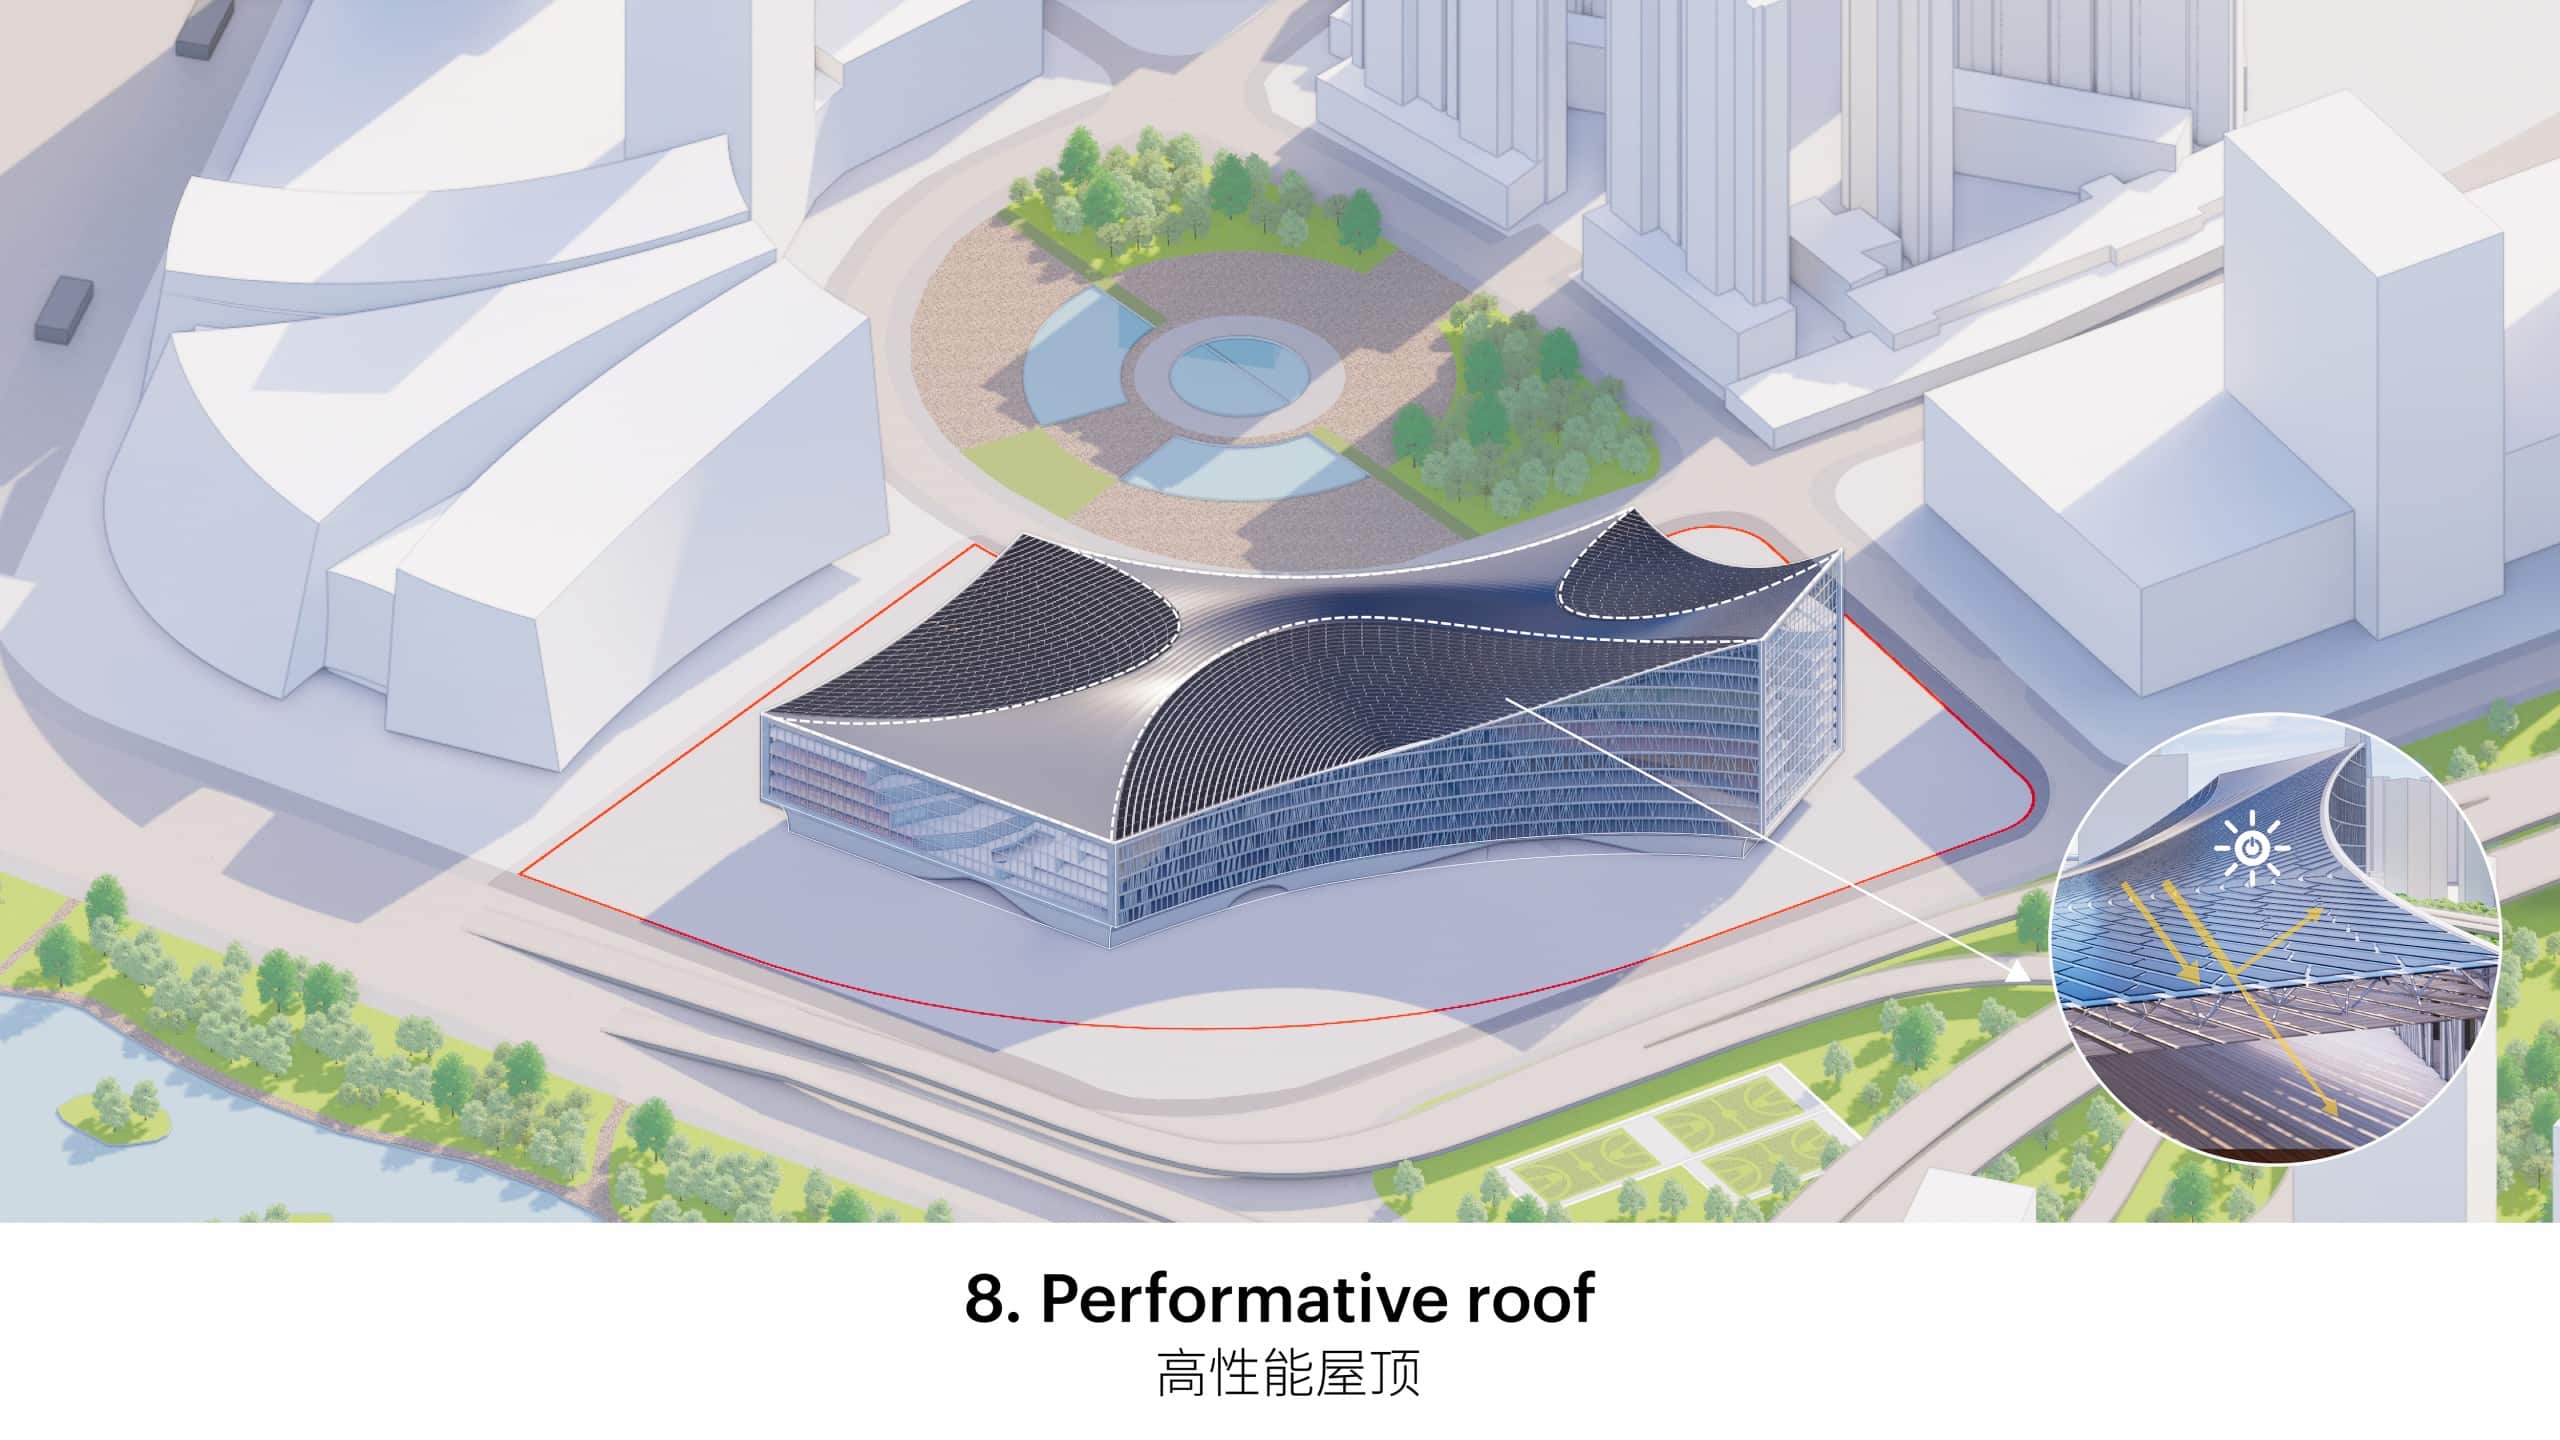 Das Drei-Fenster-Konzept sowie die Form des Daches der Wuhan Library sind vielseitig vorteilhaft. Grafiken: © MVRDV